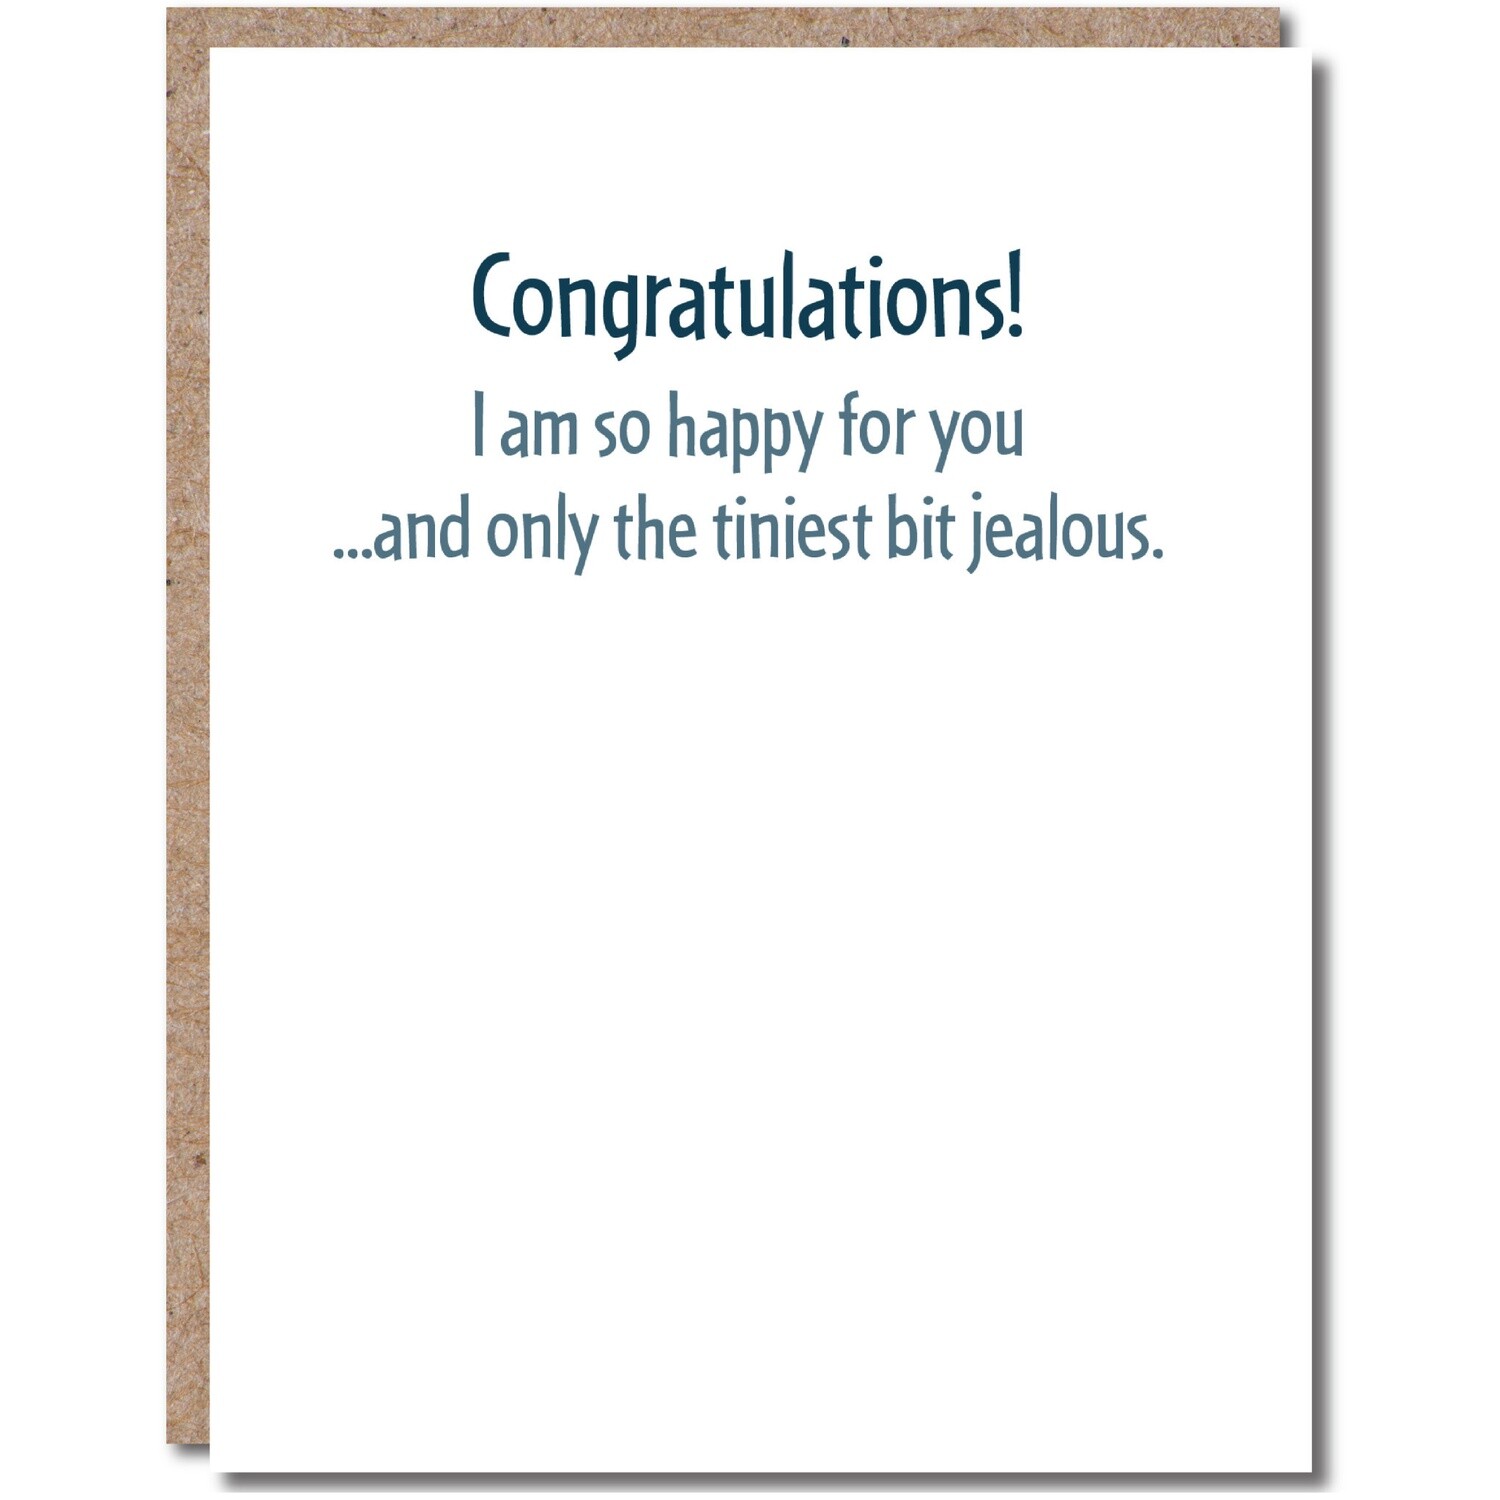 Congratulations Card - Jealous